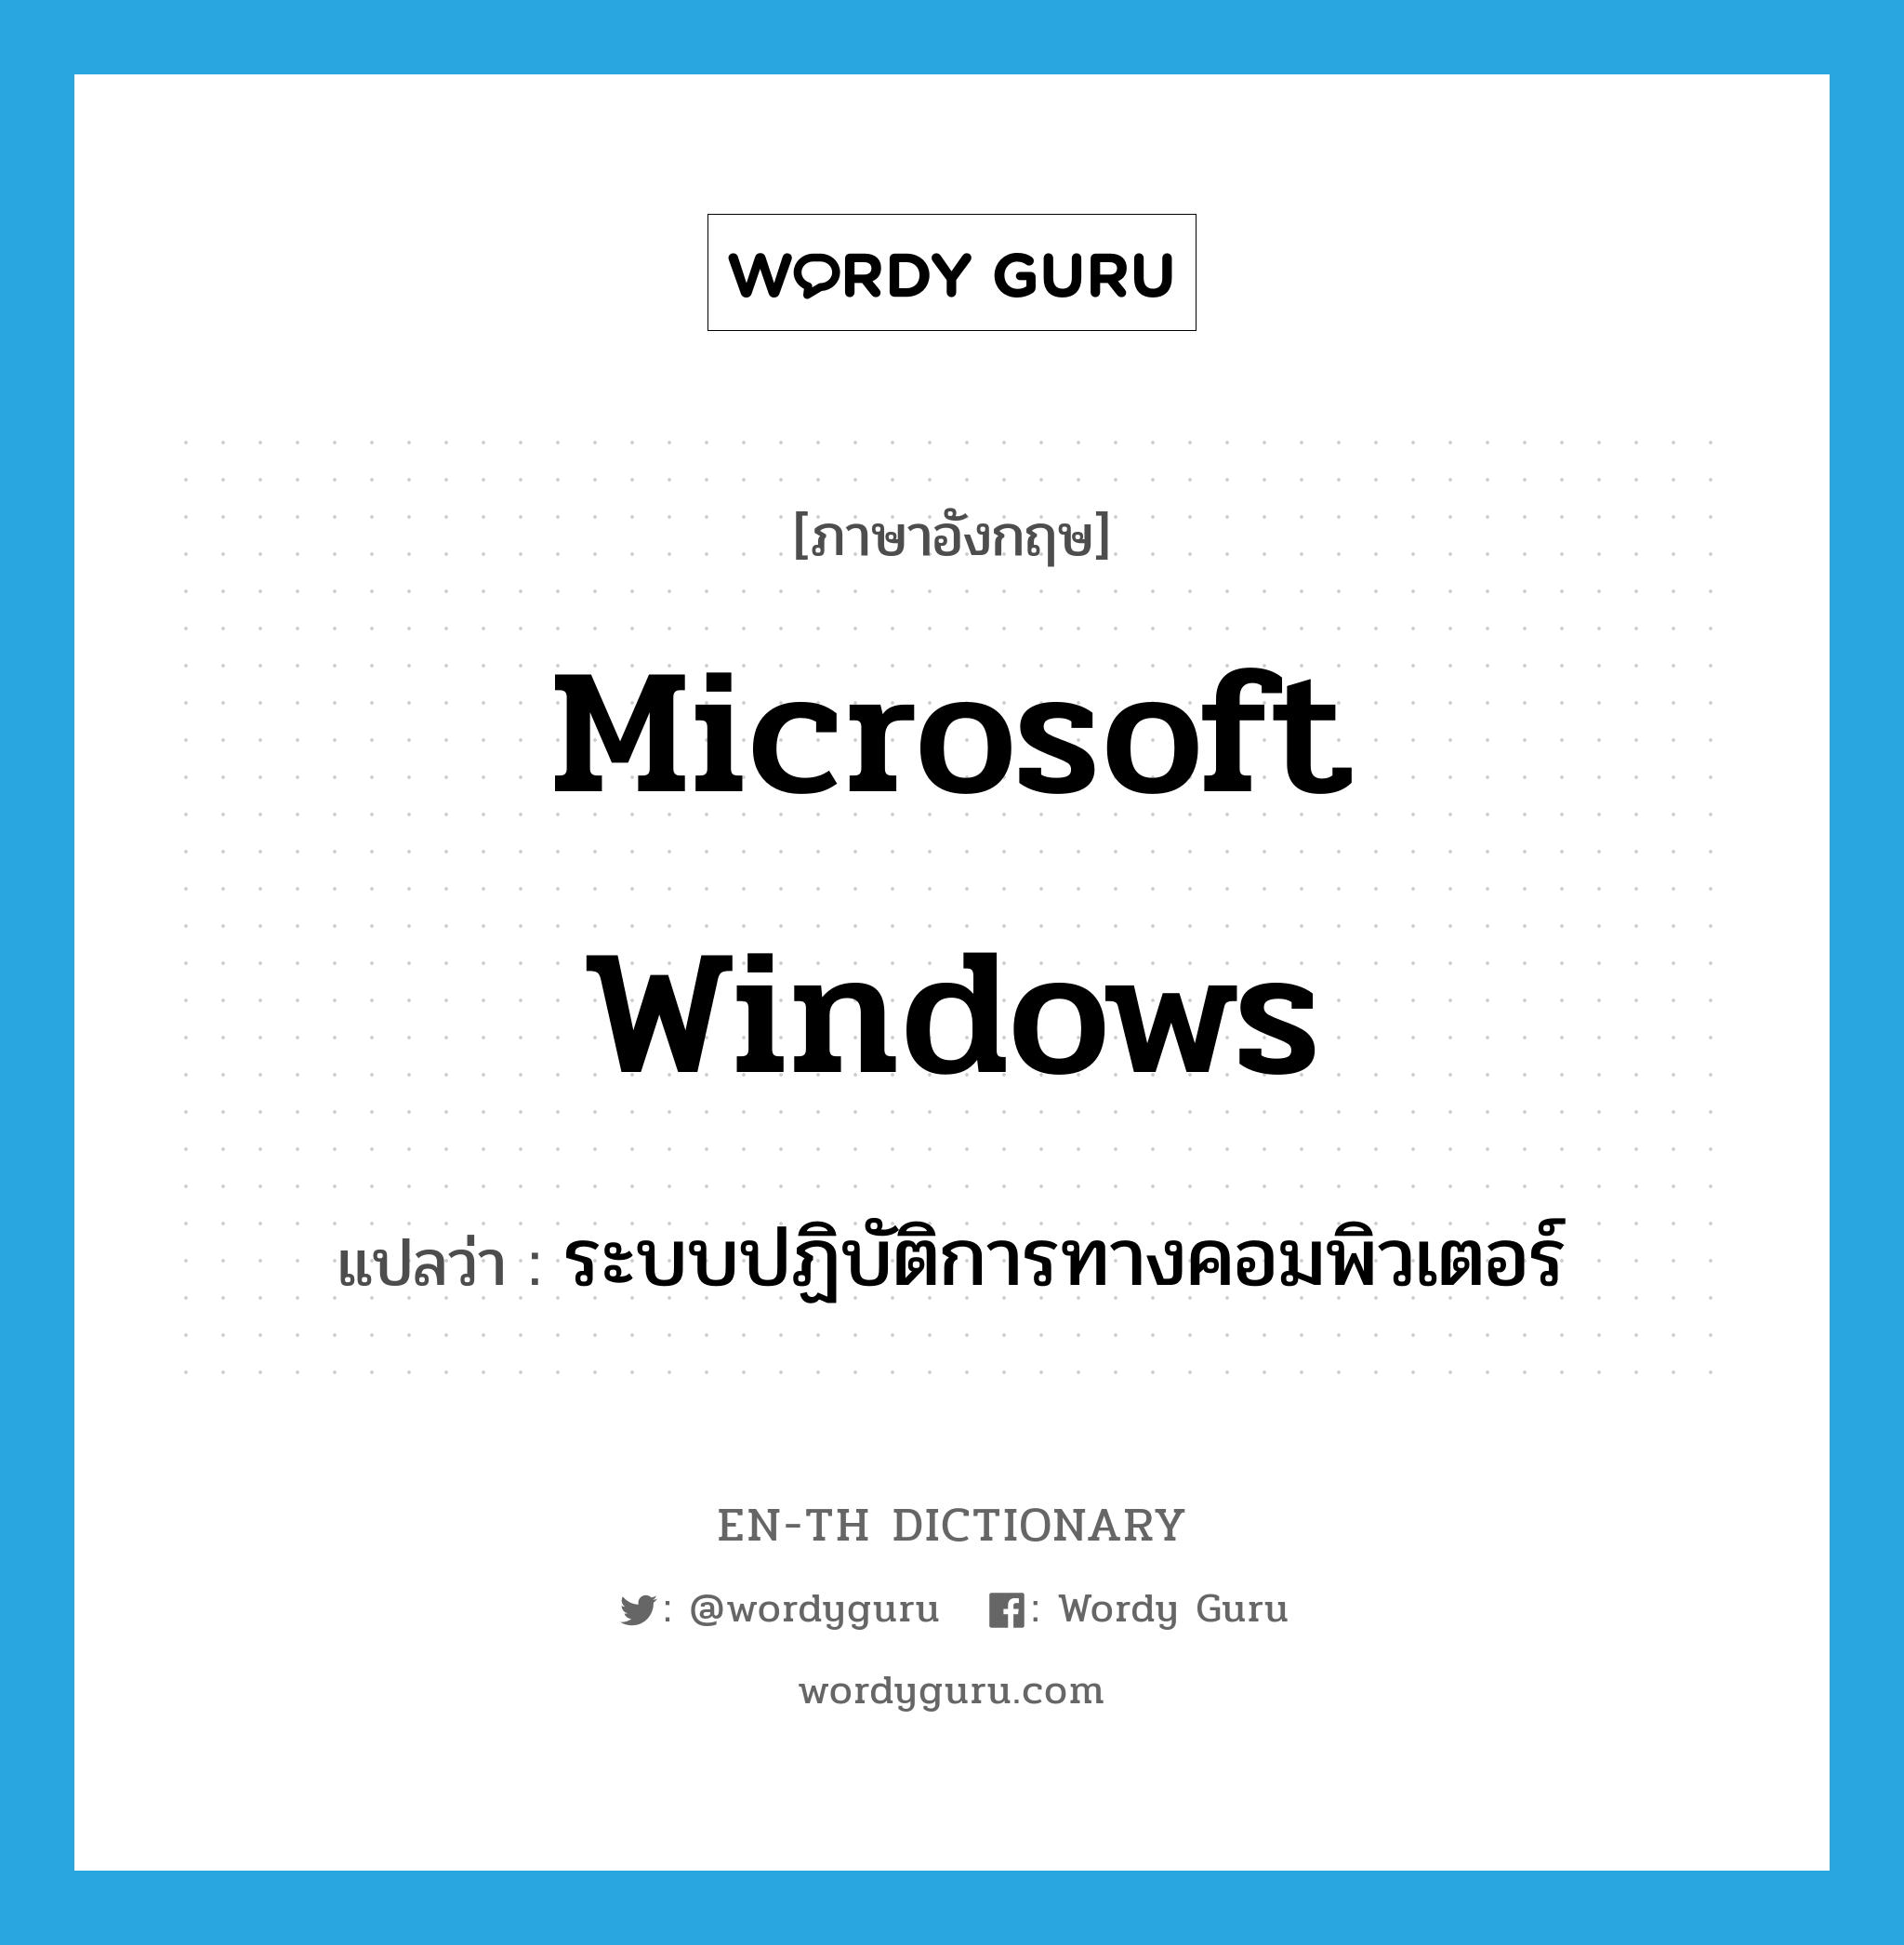 Microsoft Windows แปลว่า?, คำศัพท์ภาษาอังกฤษ Microsoft Windows แปลว่า ระบบปฏิบัติการทางคอมพิวเตอร์ ประเภท N หมวด N